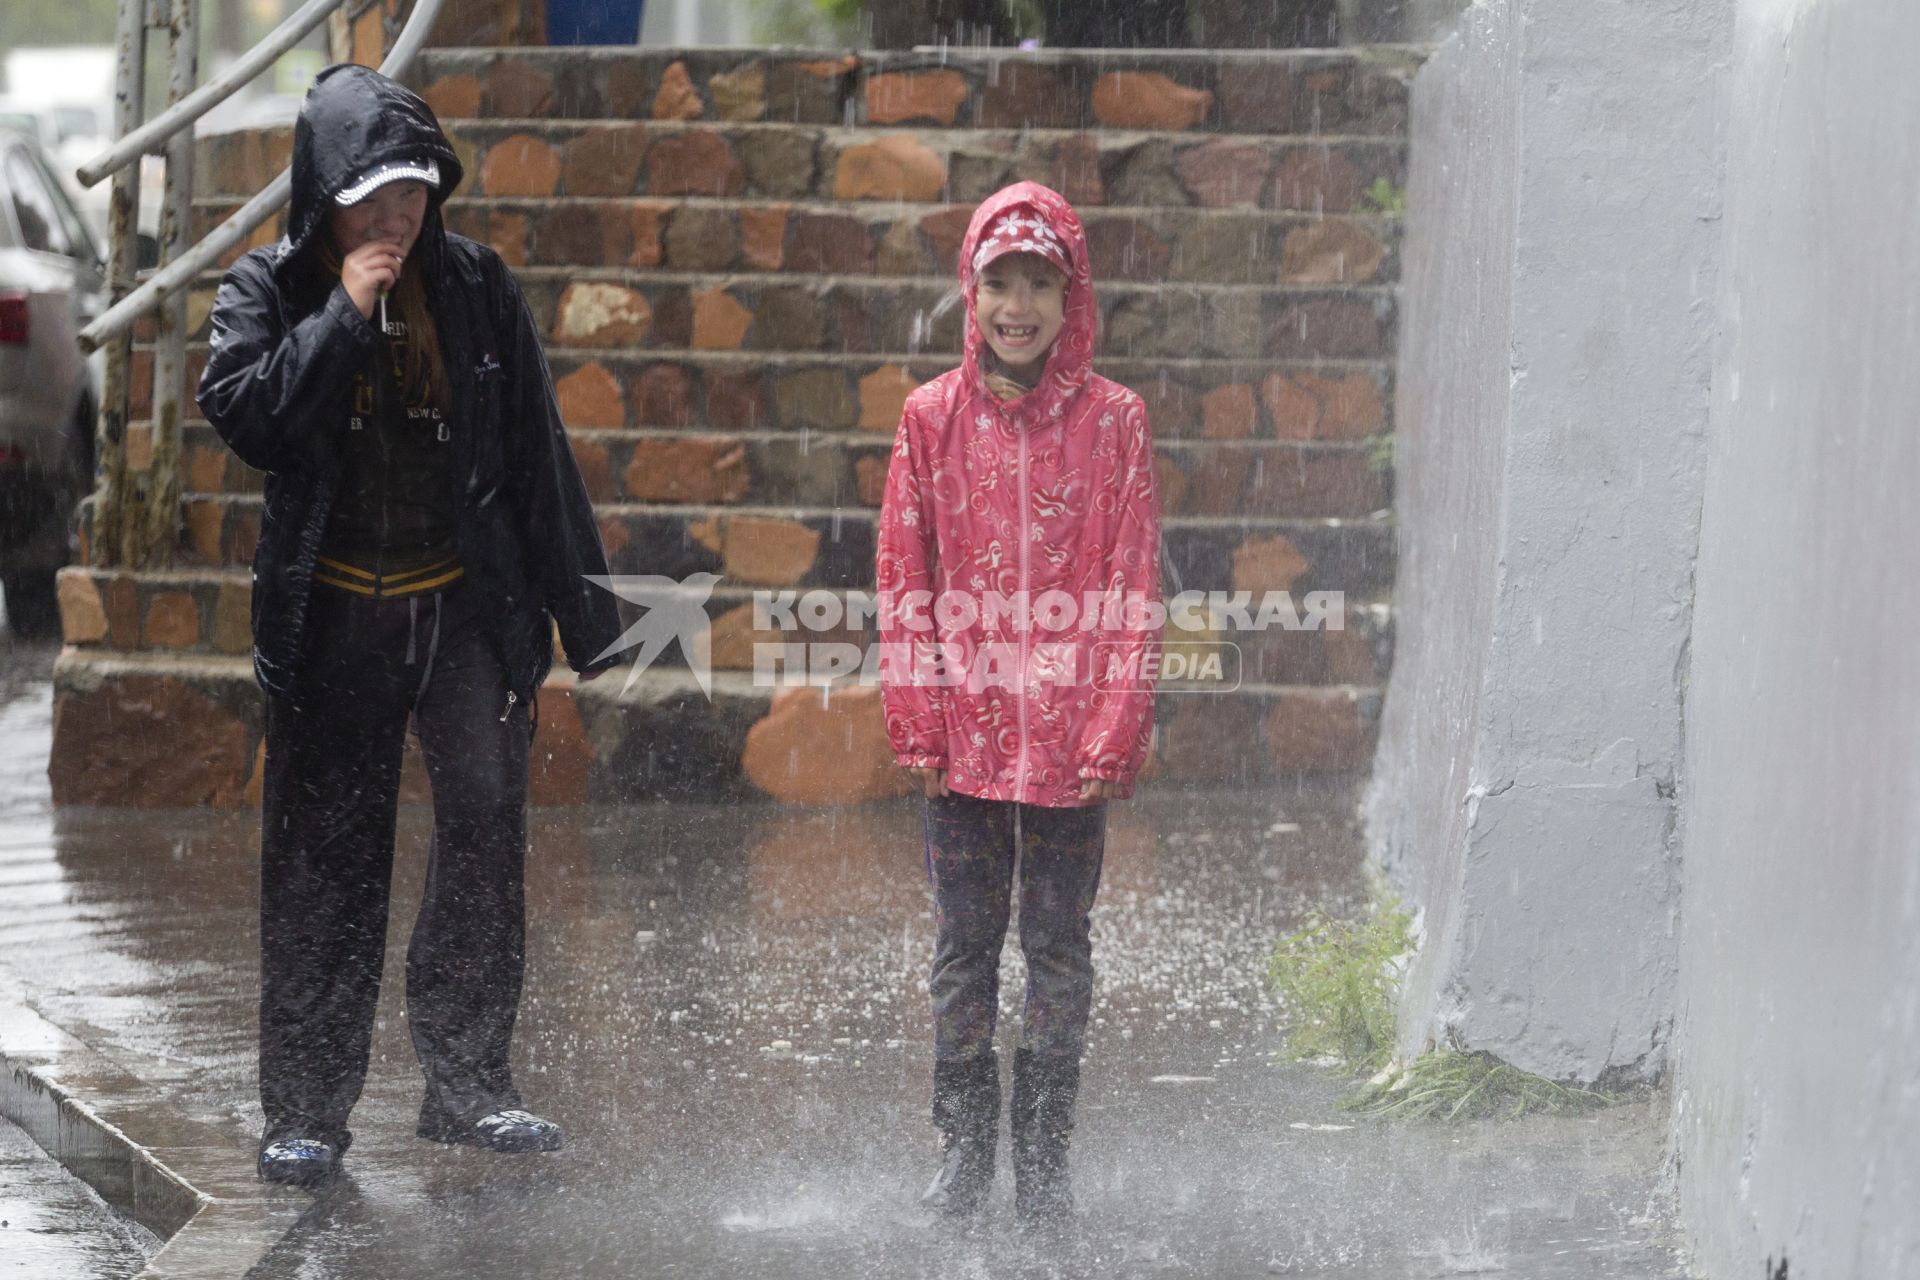 Иркутск. Дети гуляют под дождем.